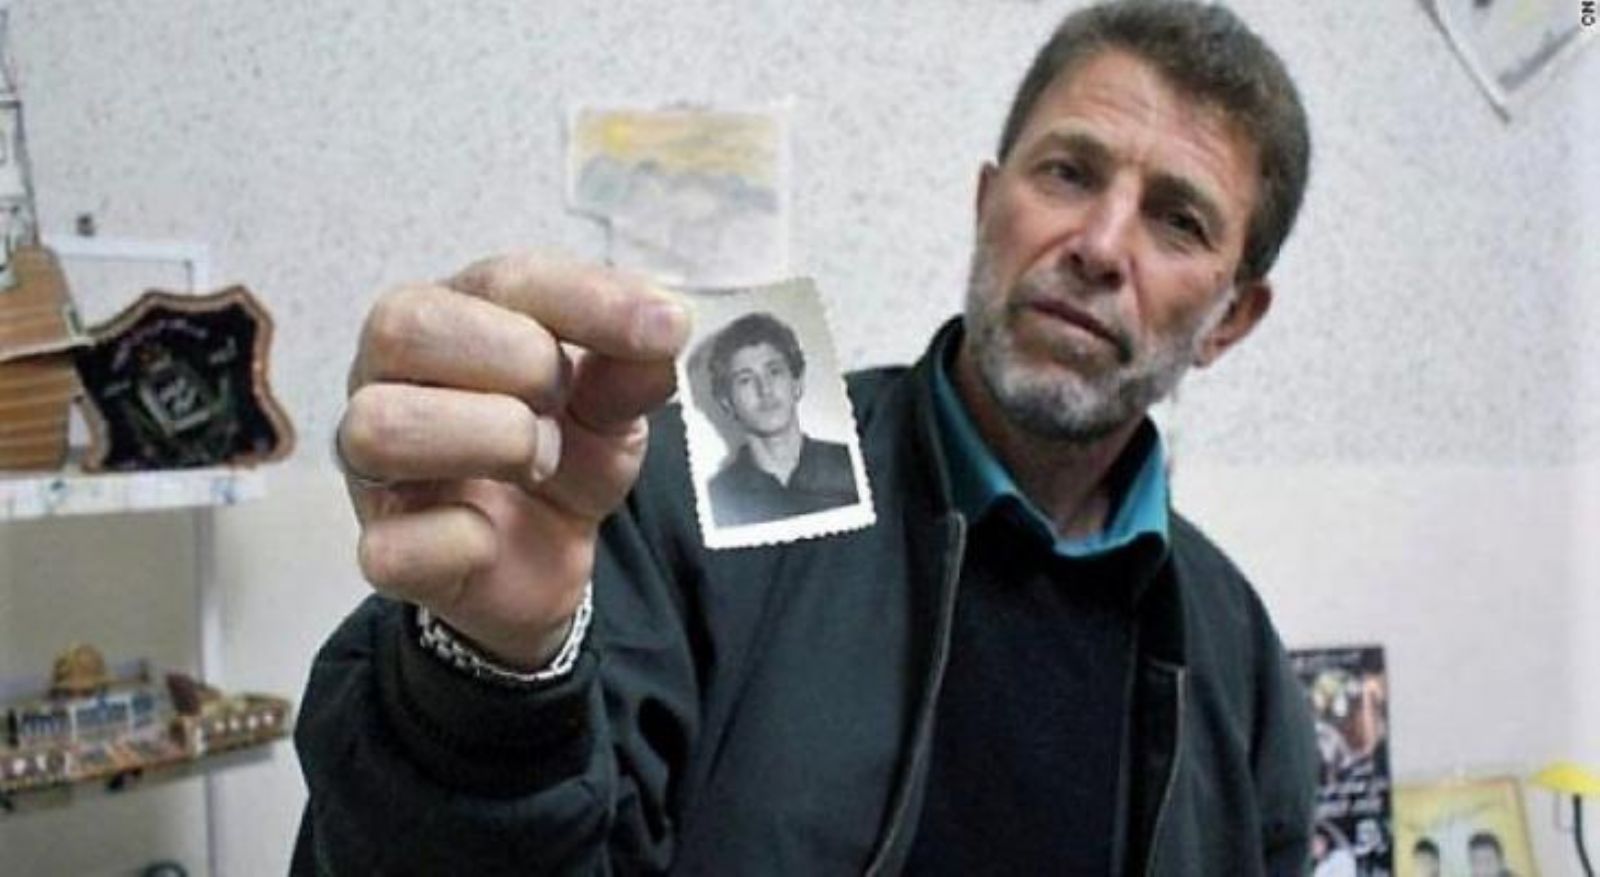 قضى ما يزيد عن 42 عامًا في السجون الاحتلال يعقد جلسة محاكمة جديدة لـ "نائل البرغوثي"